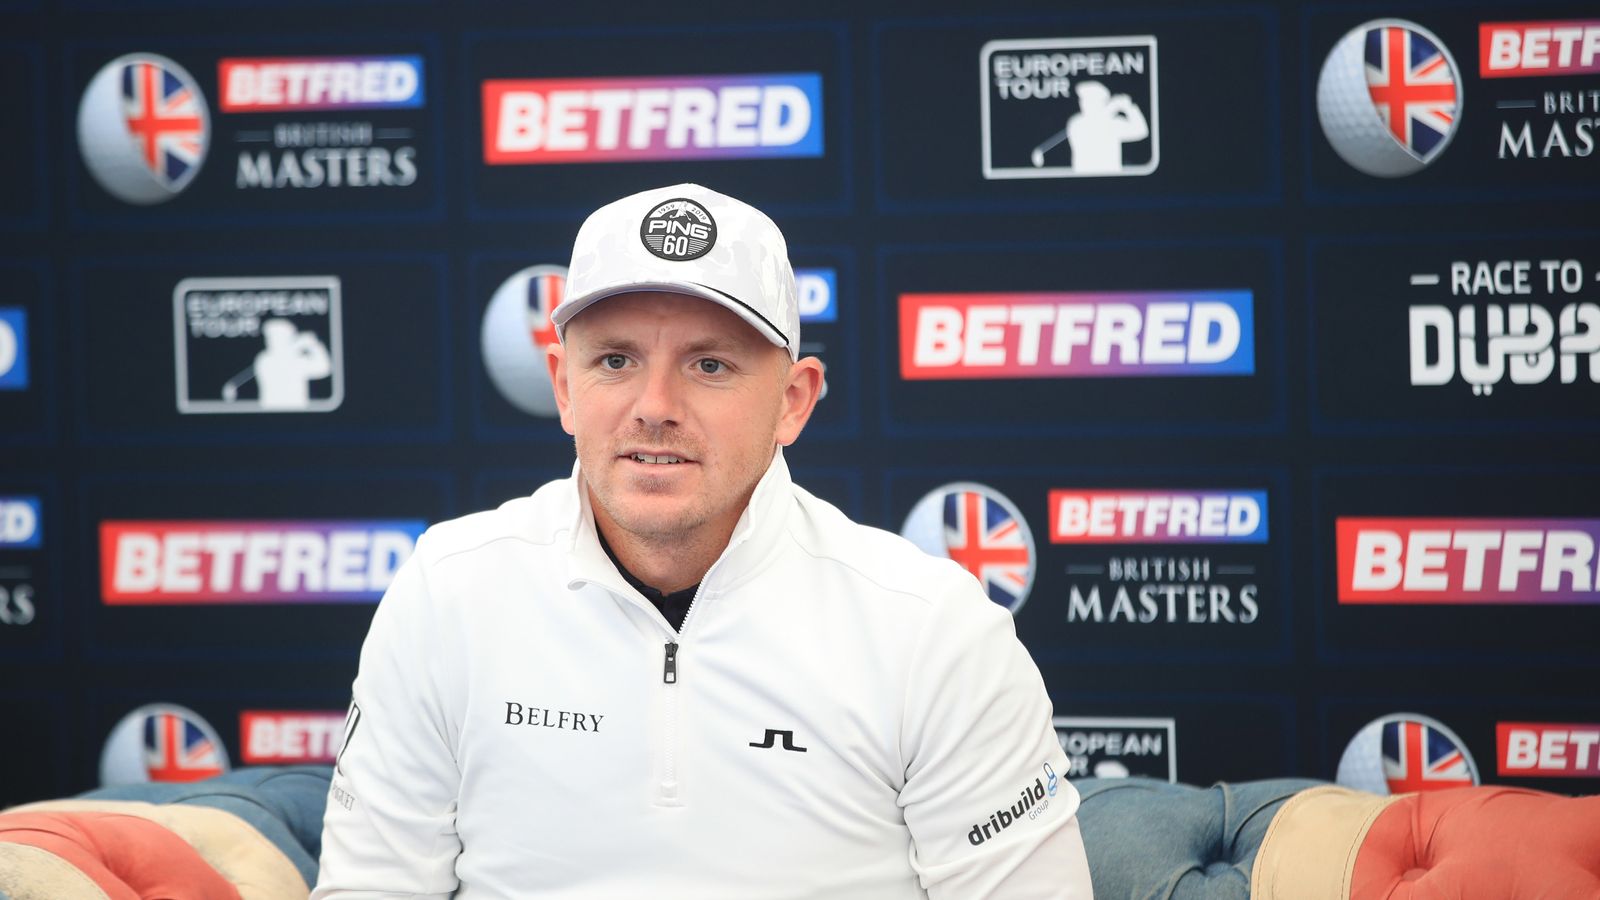 Photo: british masters golf betting 2019